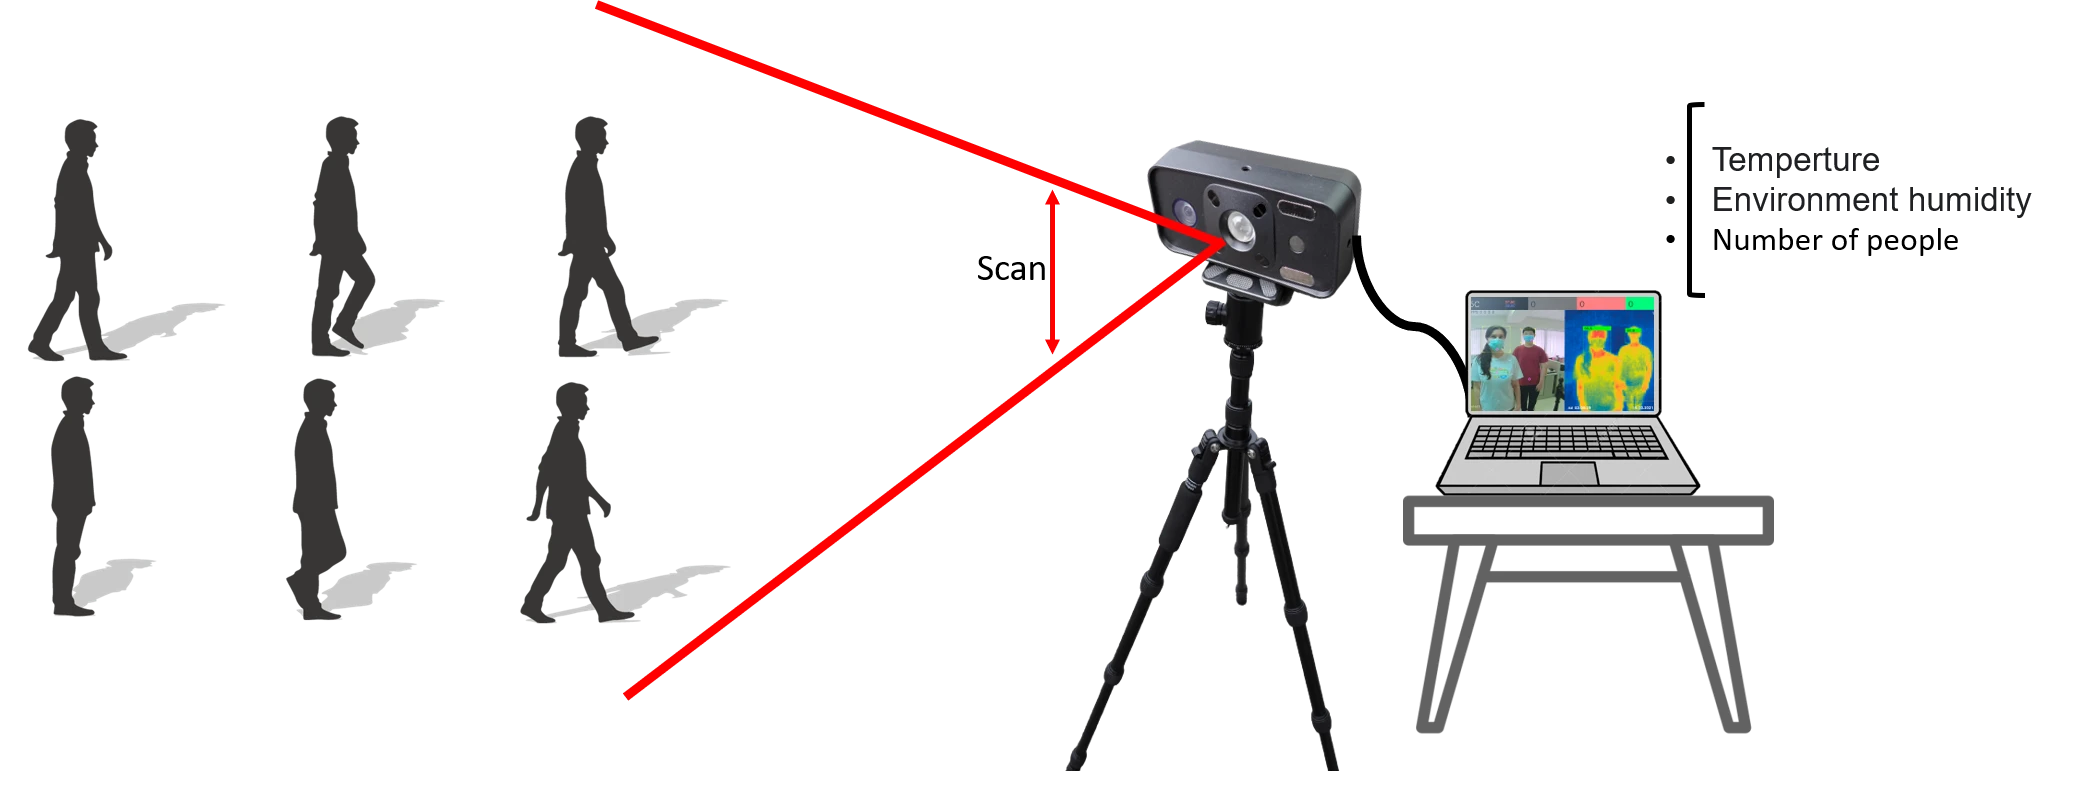 Digital thermal imaging detection camera   with temp  Measurement